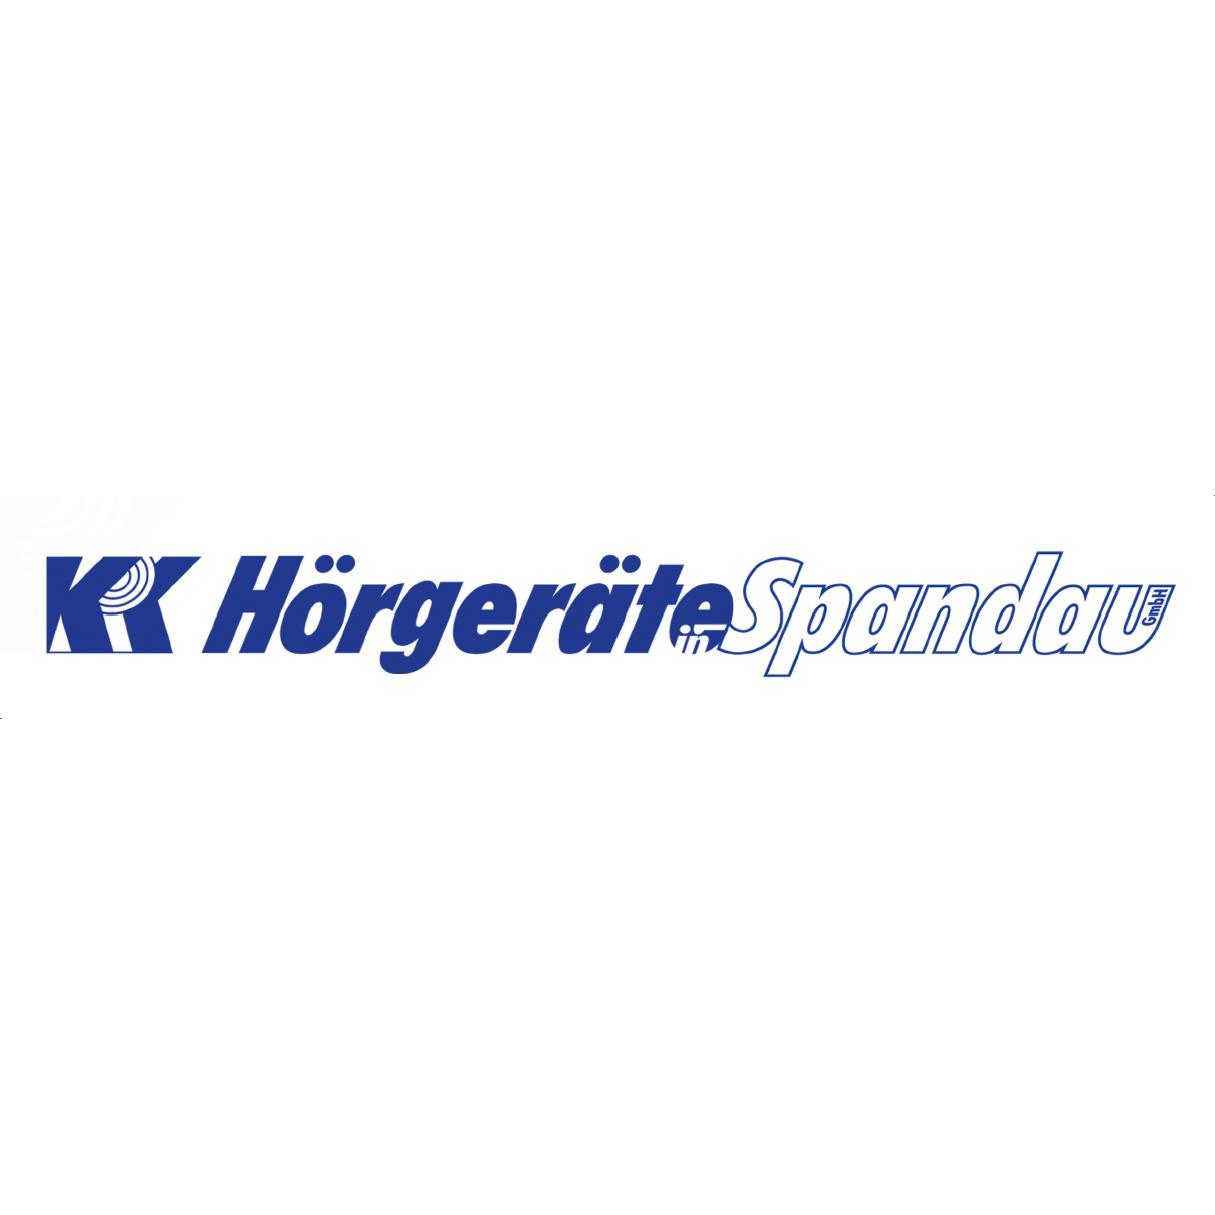 Logo KRK Hörgeräte in Spandau GmbH